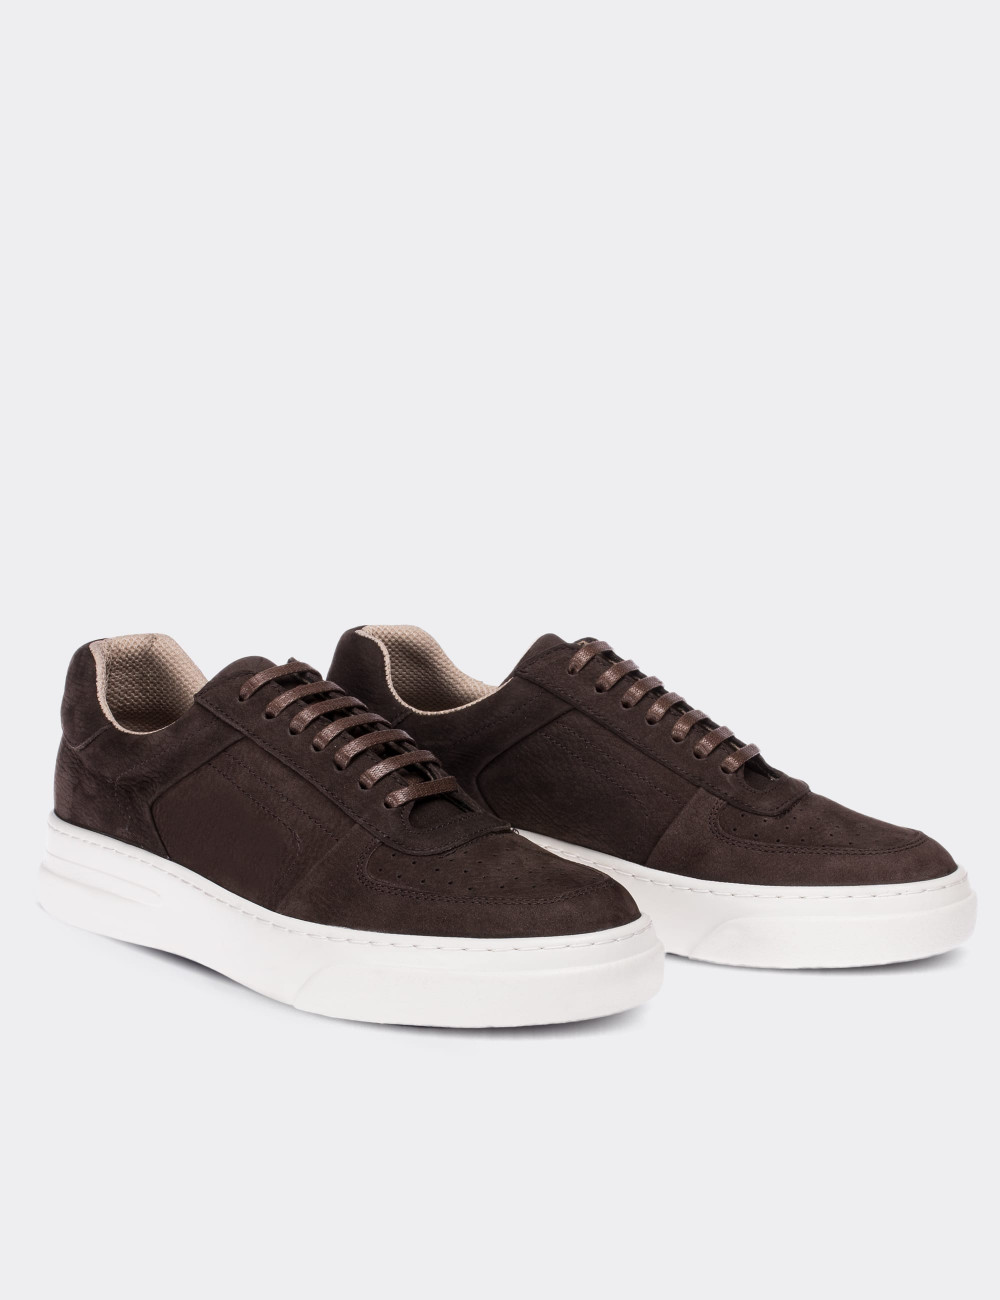 Brown Nubuck Leather Sneakers - 01716MKHVP01